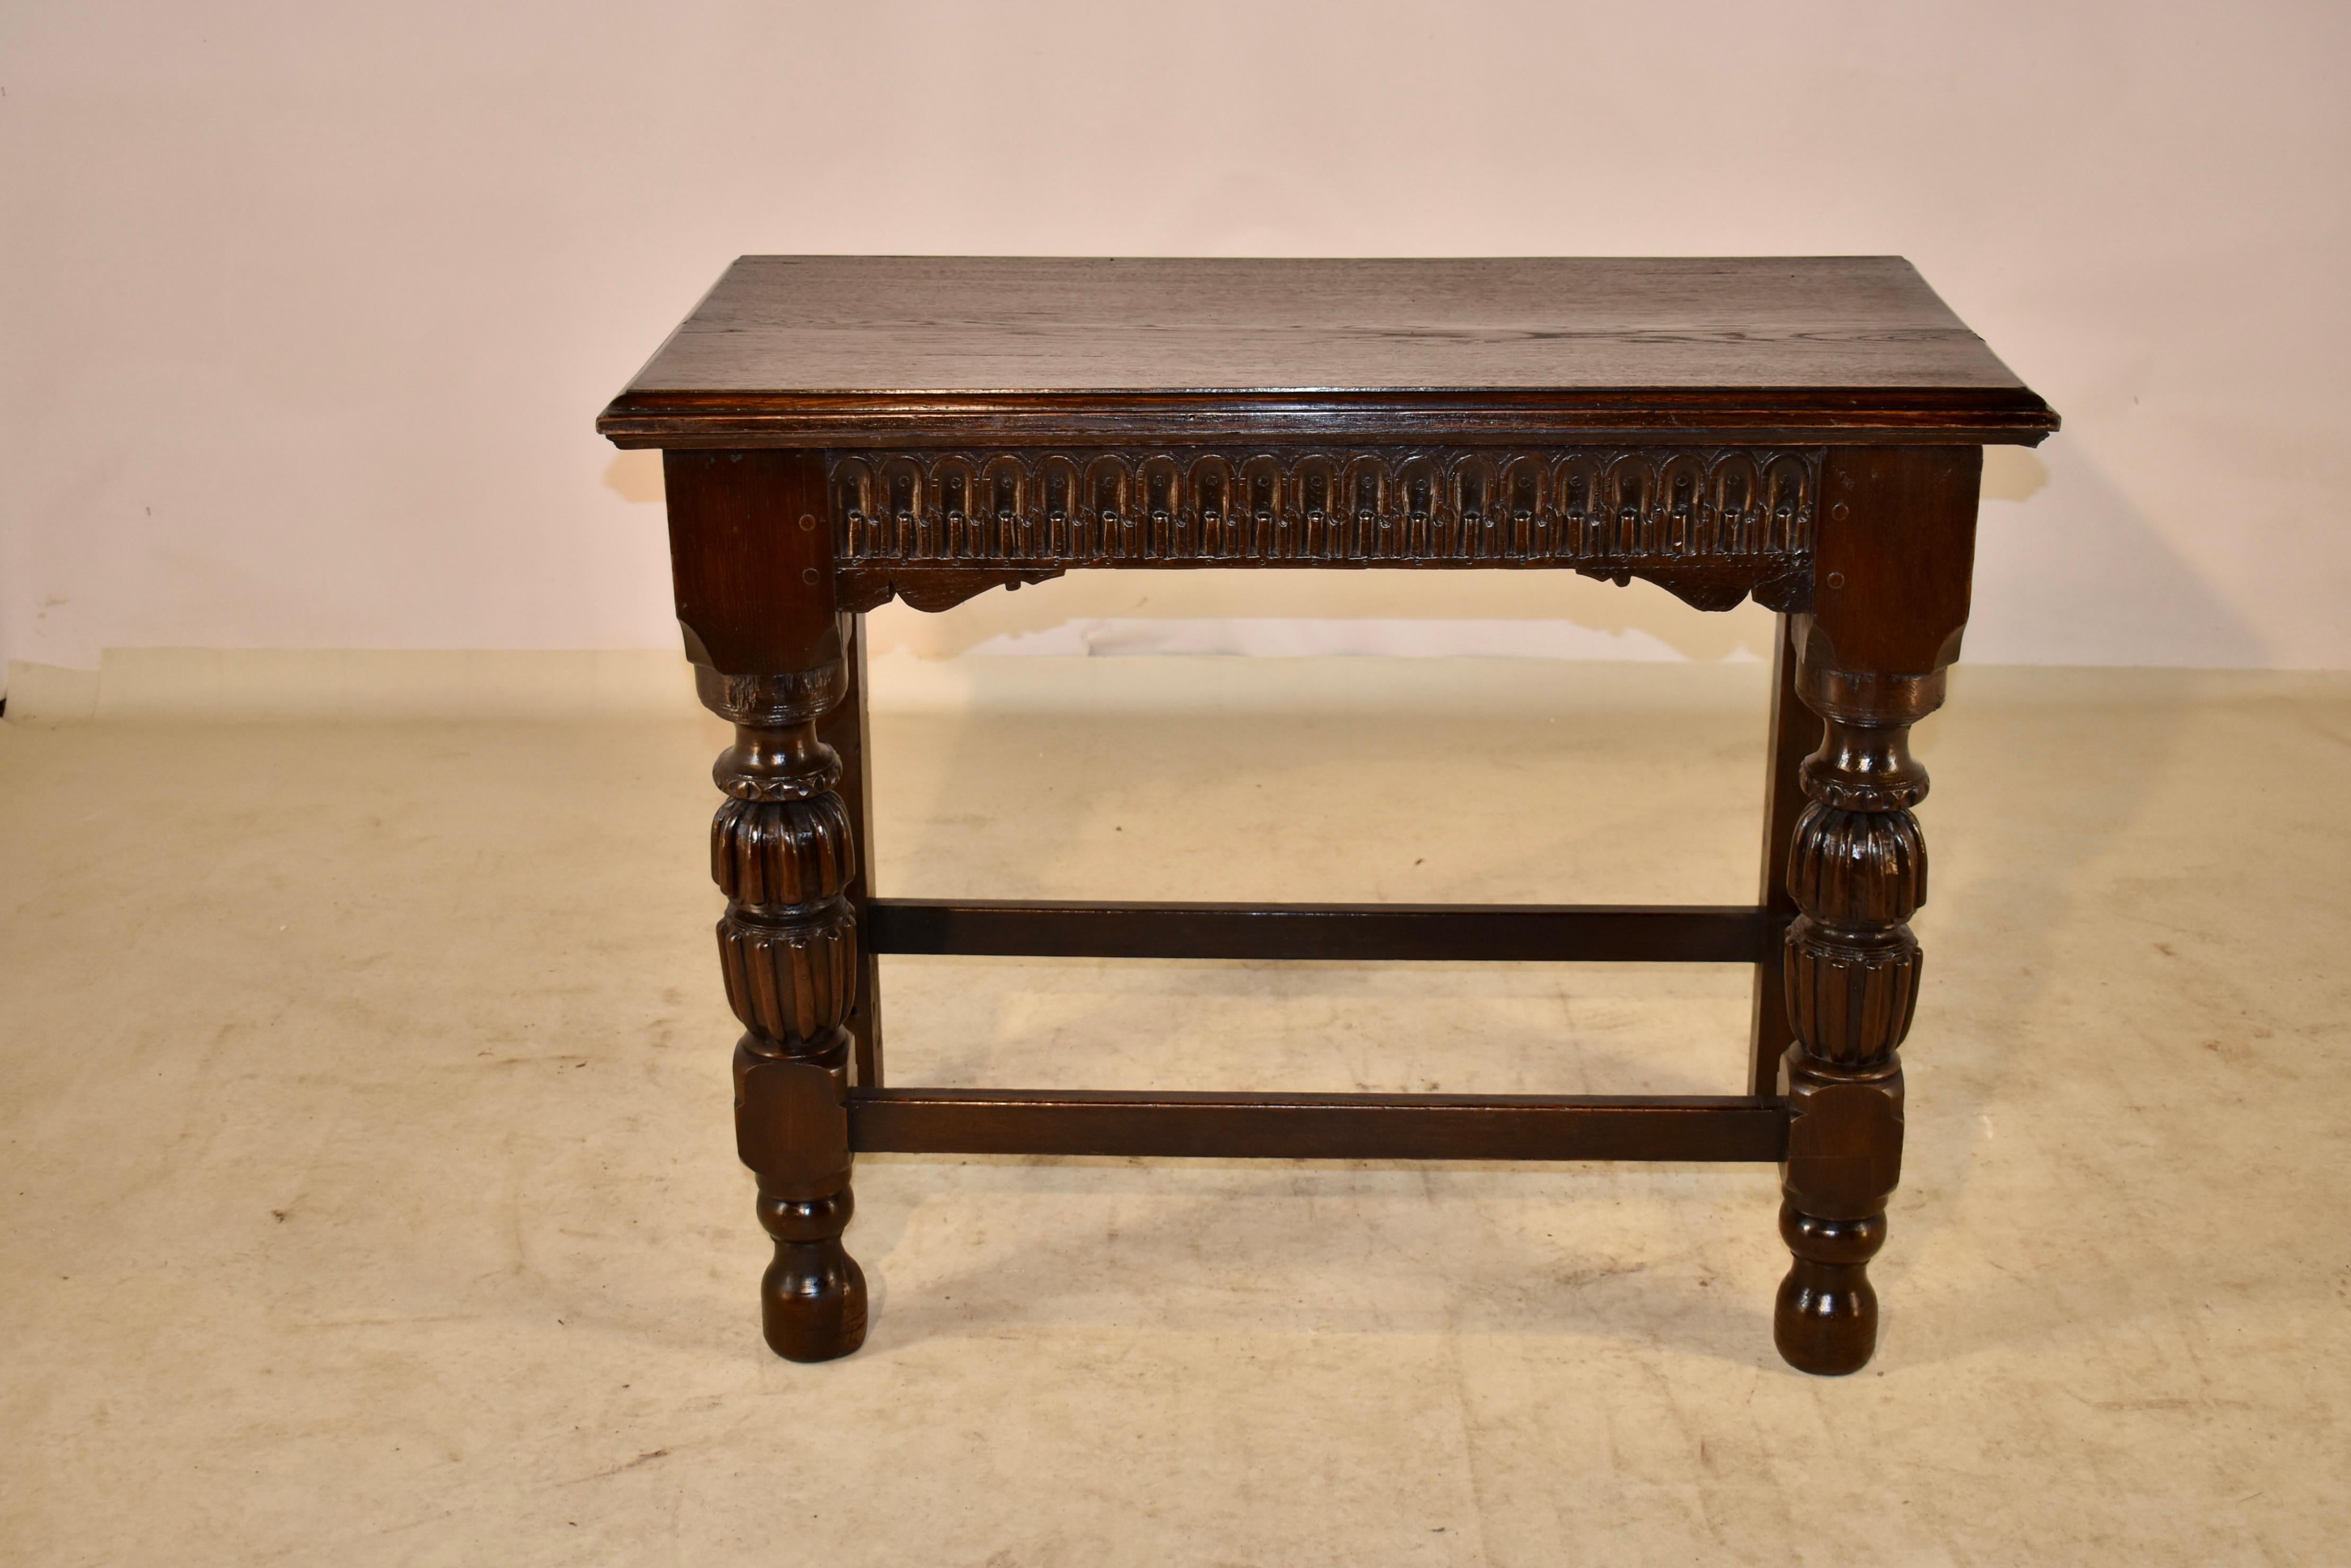 Konsolentisch aus Eiche des 18. Jahrhunderts aus England. Die Oberseite hat eine abgeschrägte Kante, die in eine handgeschnitzte Schürze mit Nulldesign über handgeschnitzten unteren Kanten übergeht. Der Tisch ist mit handgedrechselten Details